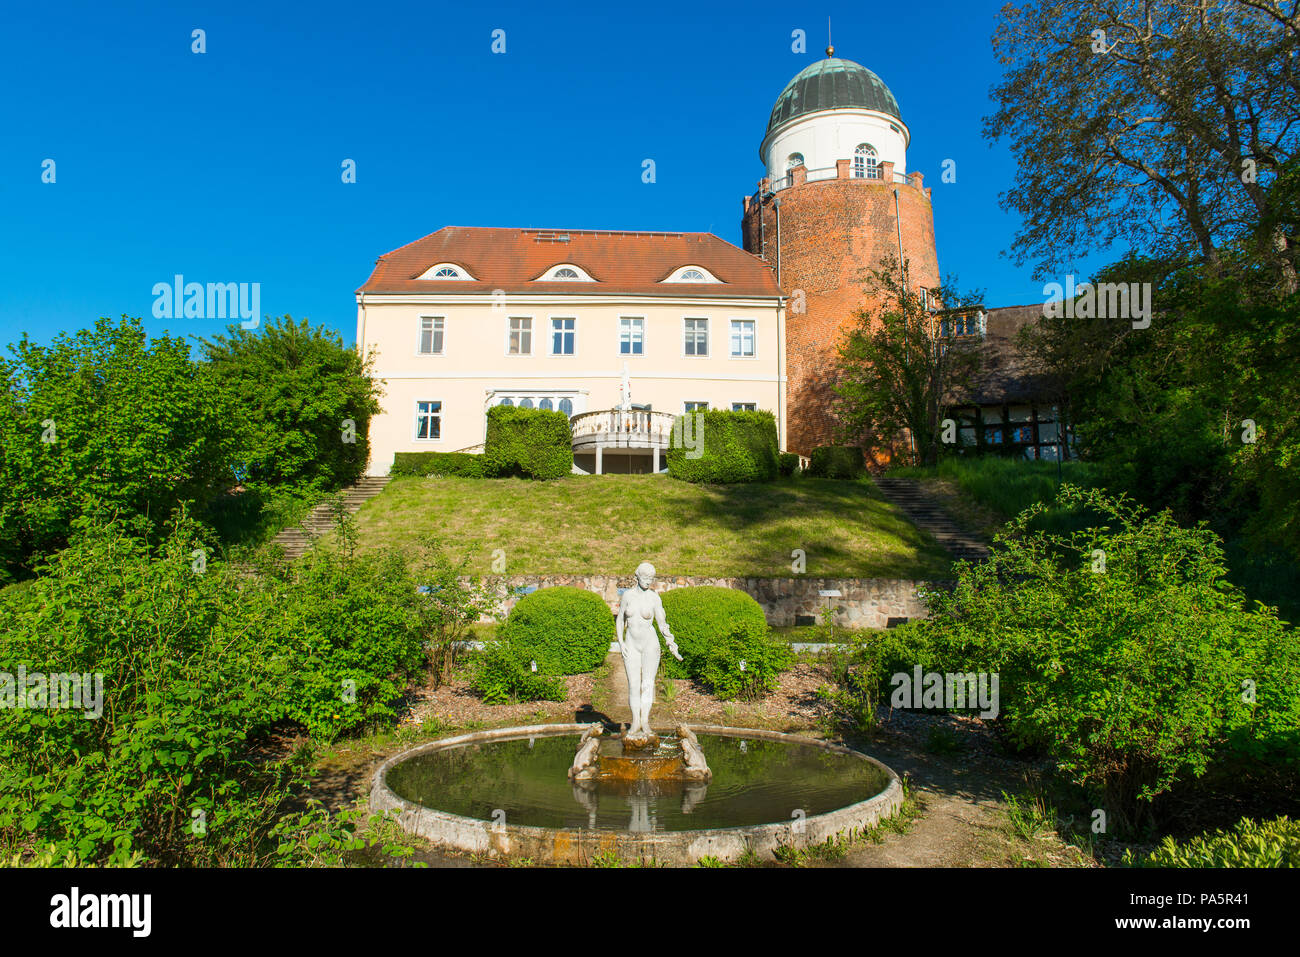 Park y el castillo de Lenzen, centro de visitantes de la reserva de la biosfera paisaje de río Elba, Lenzen, Prignitz, Brandenburgo, Alemania Foto de stock